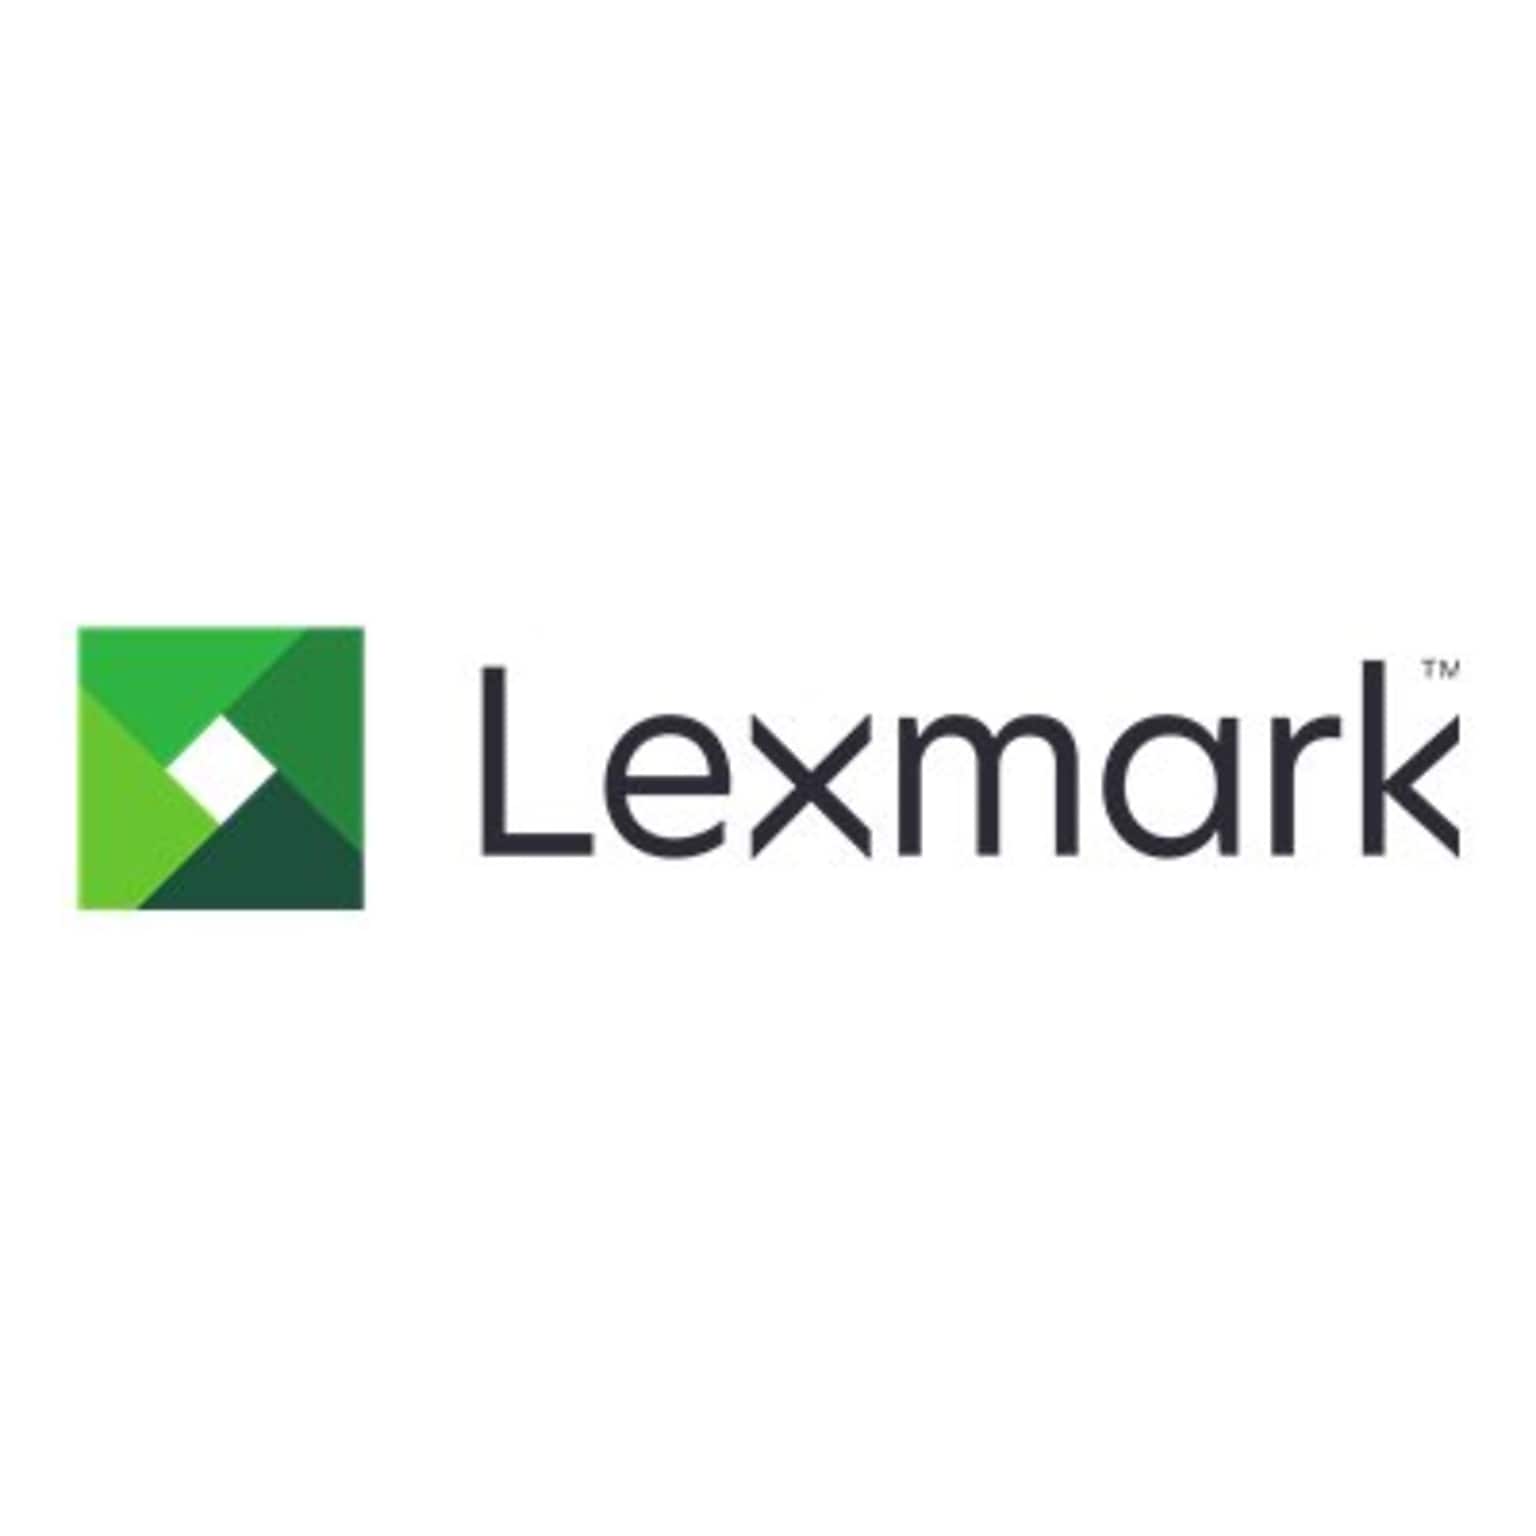 Lexmark MC3426i All-in-One Printer 40N9650